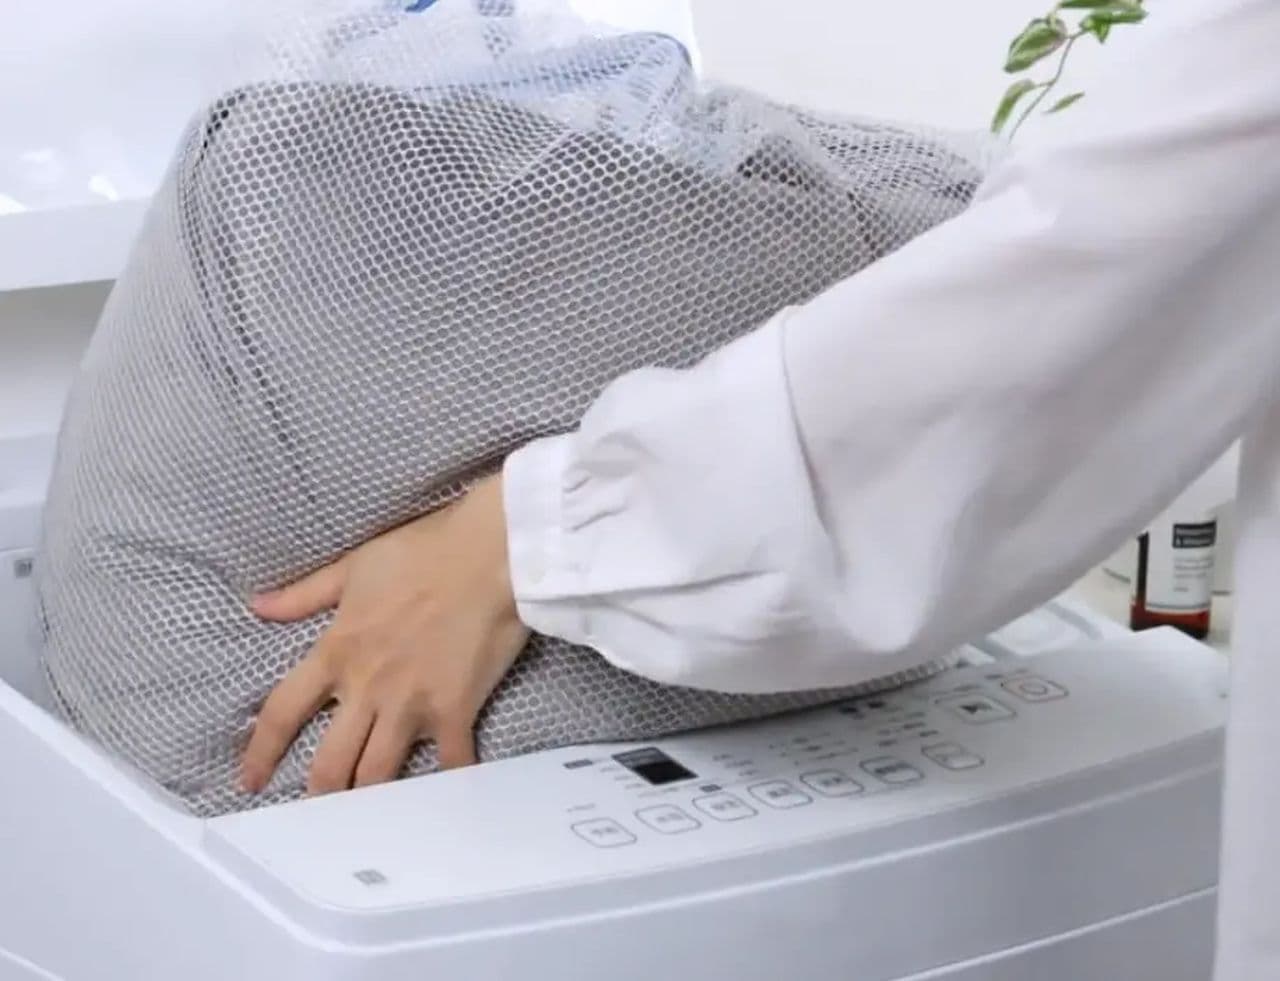 Nitori "Automatic detergent loading washing machine"